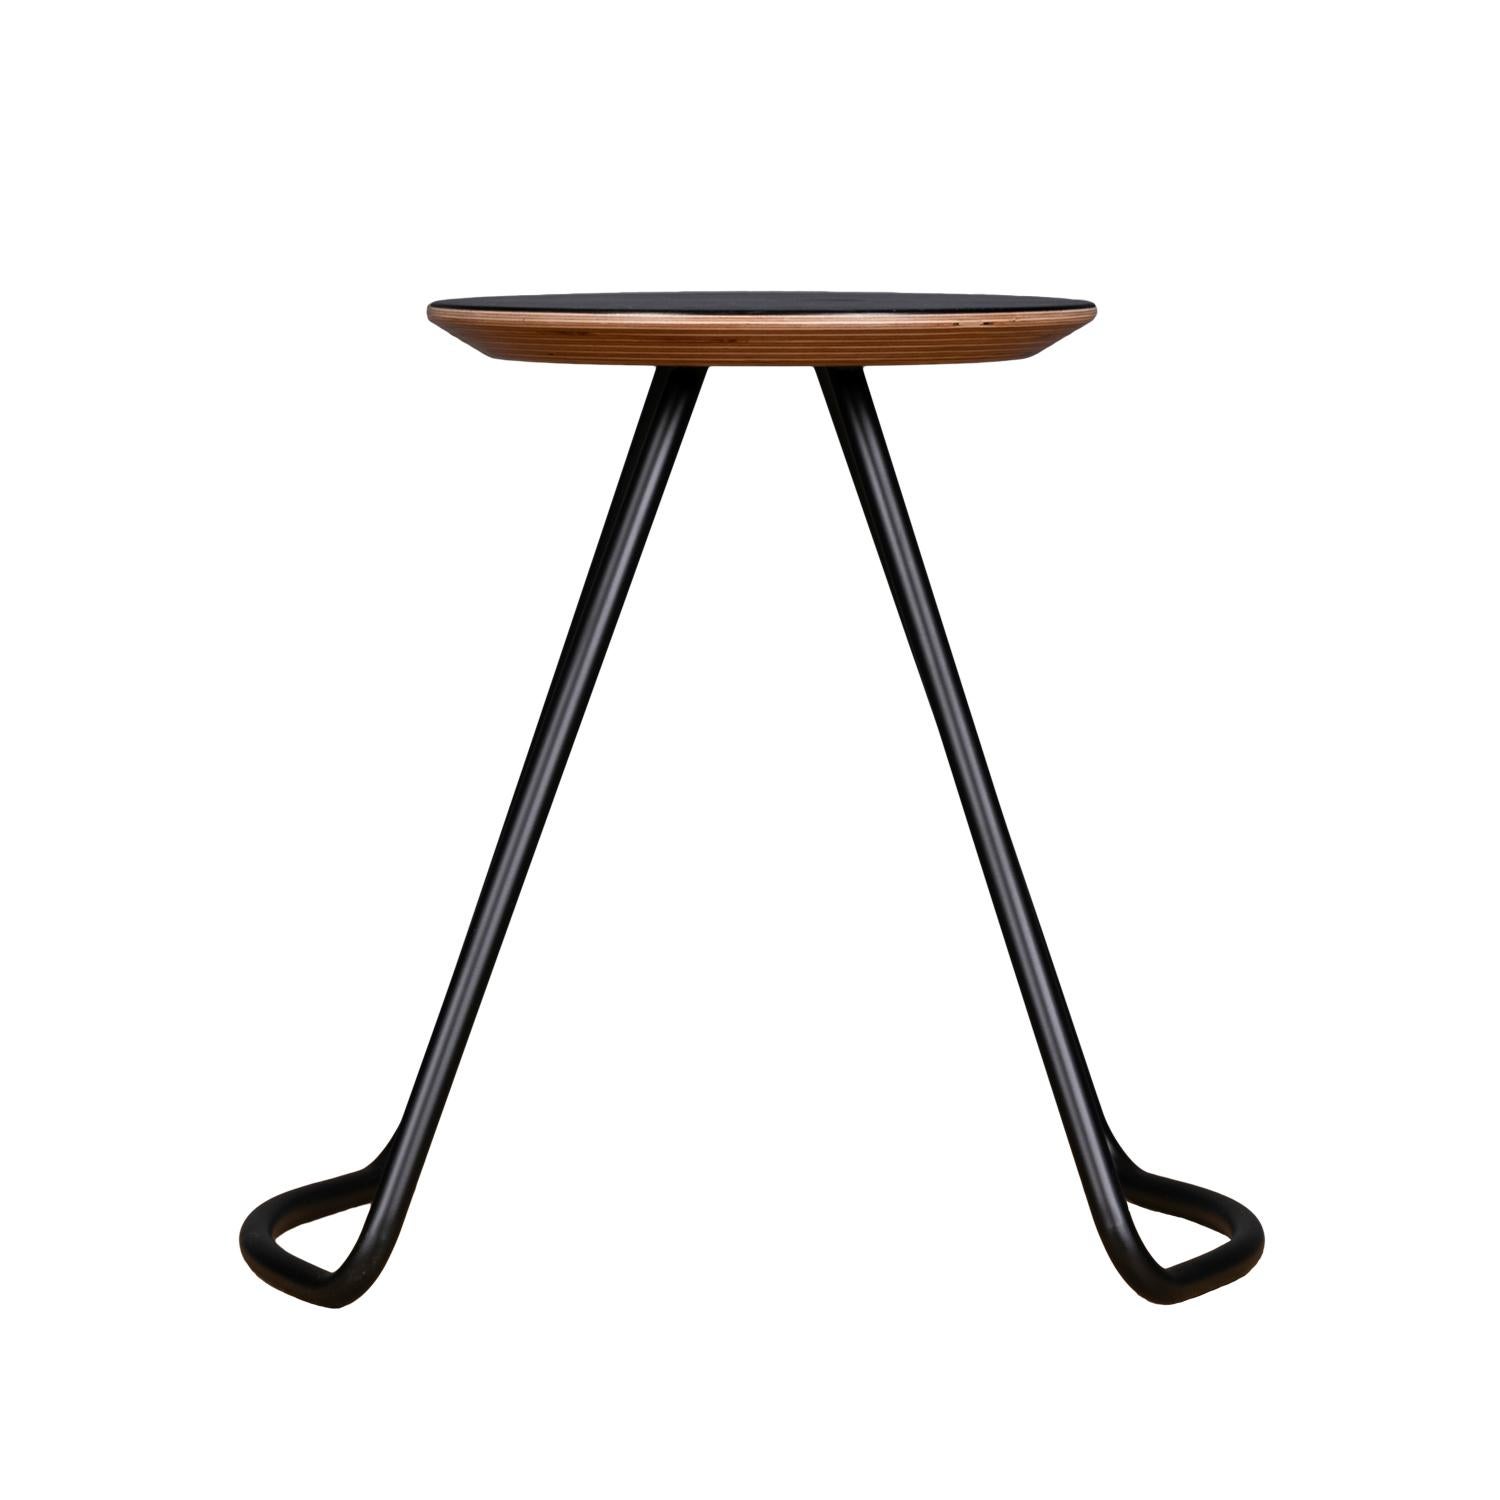 Le tabouret/table Sama fait partie de la collection Sama, qui offre une fonctionnalité grâce à des formes simples, mais frappantes et sculpturales qui ajoutent une touche unique et élégante à son environnement. Le tabouret/table Sama est un